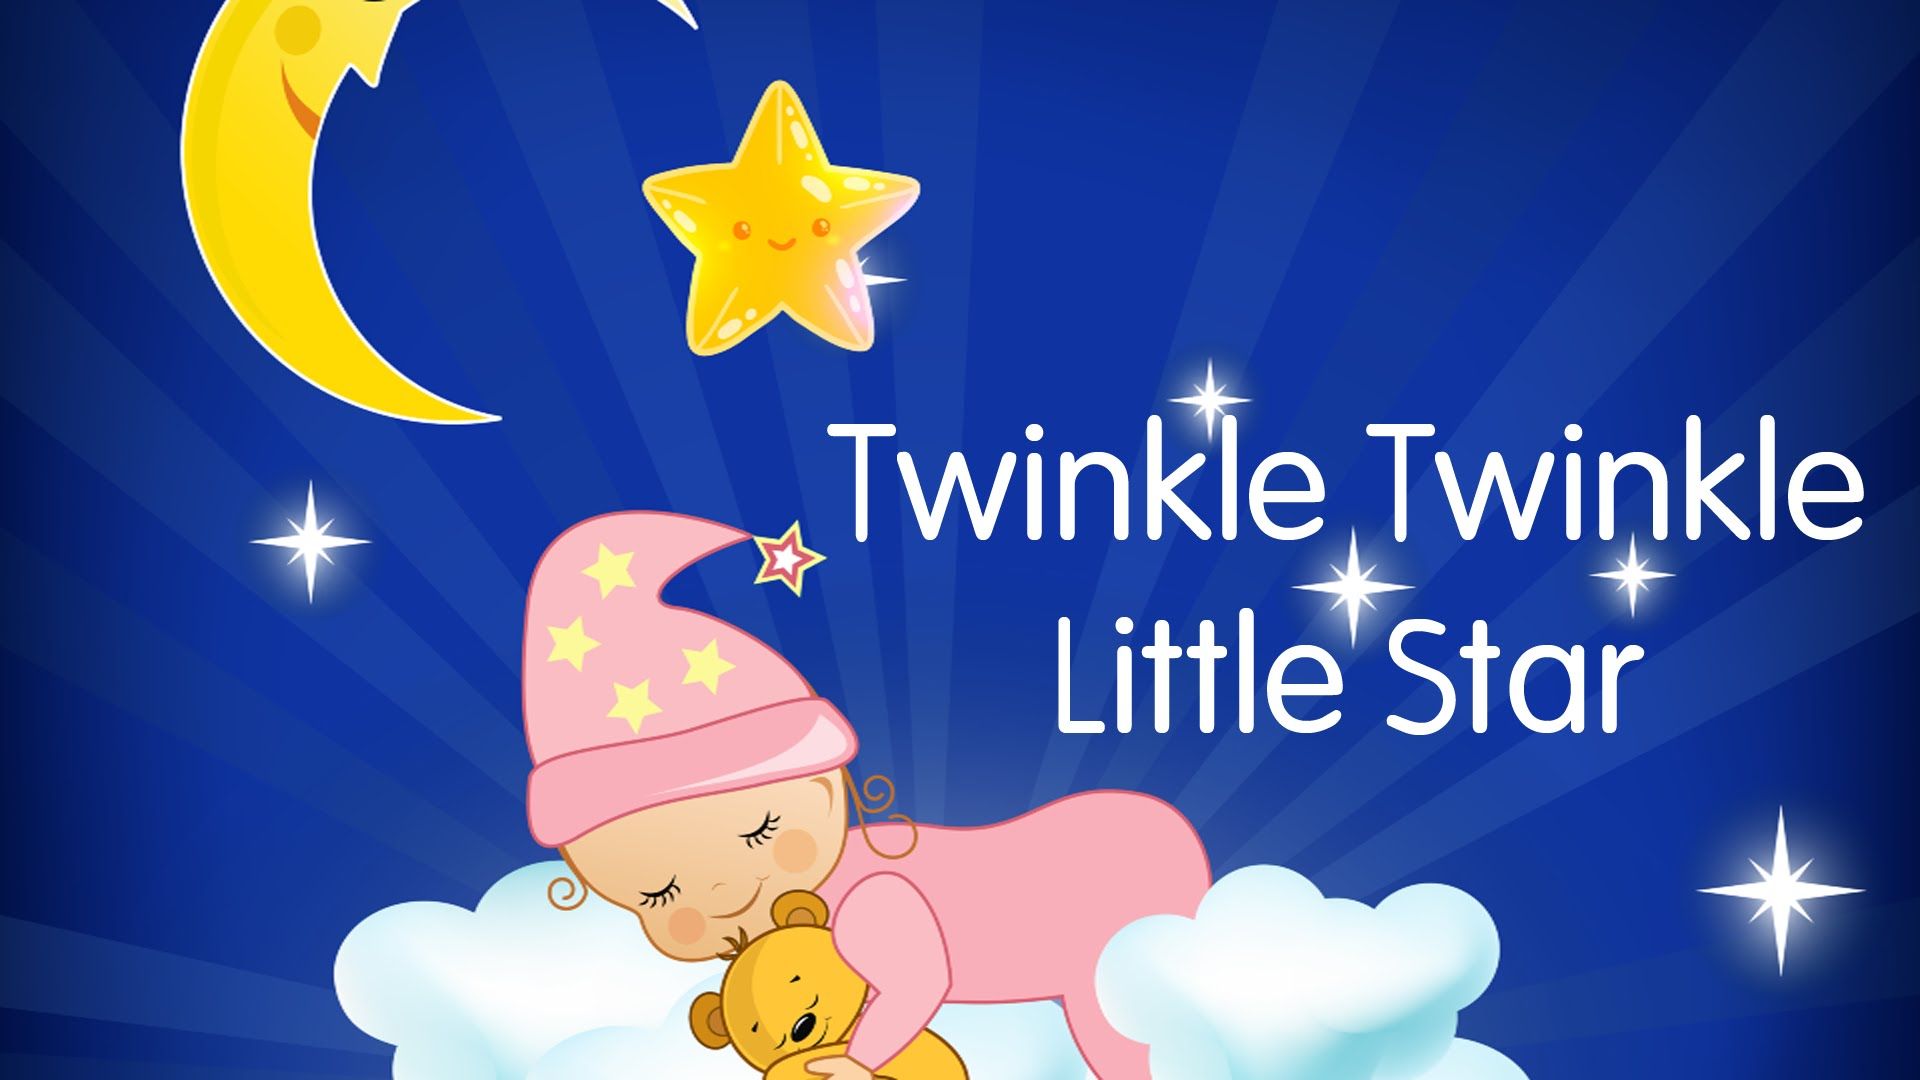 Twinkle Twinkle Little Star Wallpaper. Little Mermaid Disney Wallpaper, Pretty Little Liars Wallpaper and Little Girl Wallpaper